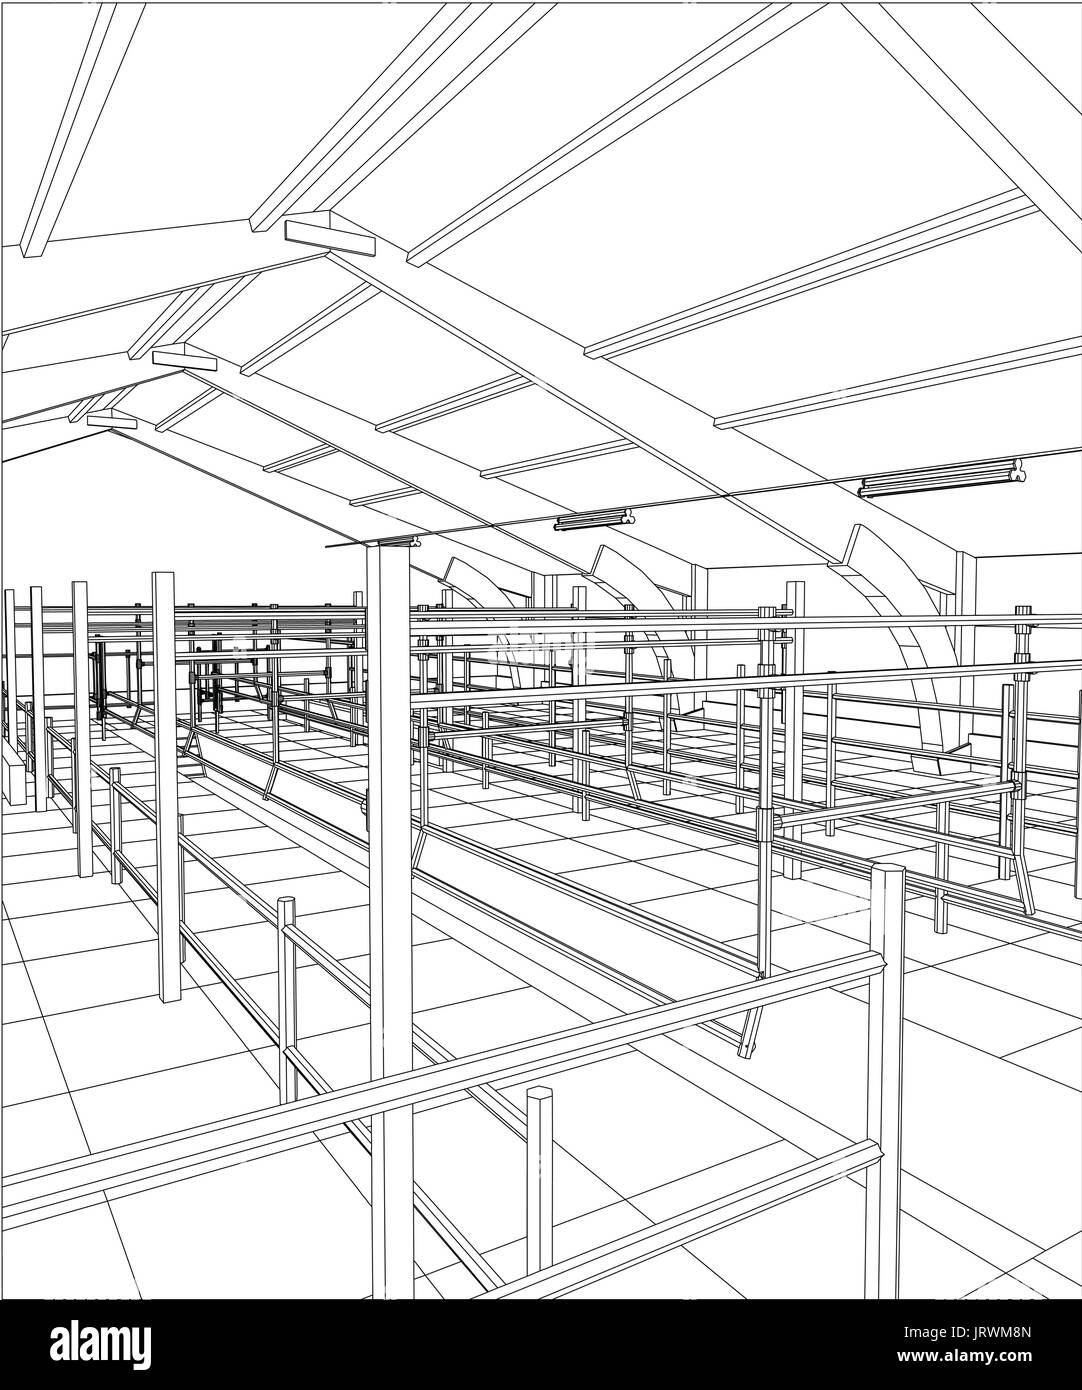 Bâtiment industriel à l'intérieur des constructions abstraites. Illustration 3d de traçage Illustration de Vecteur